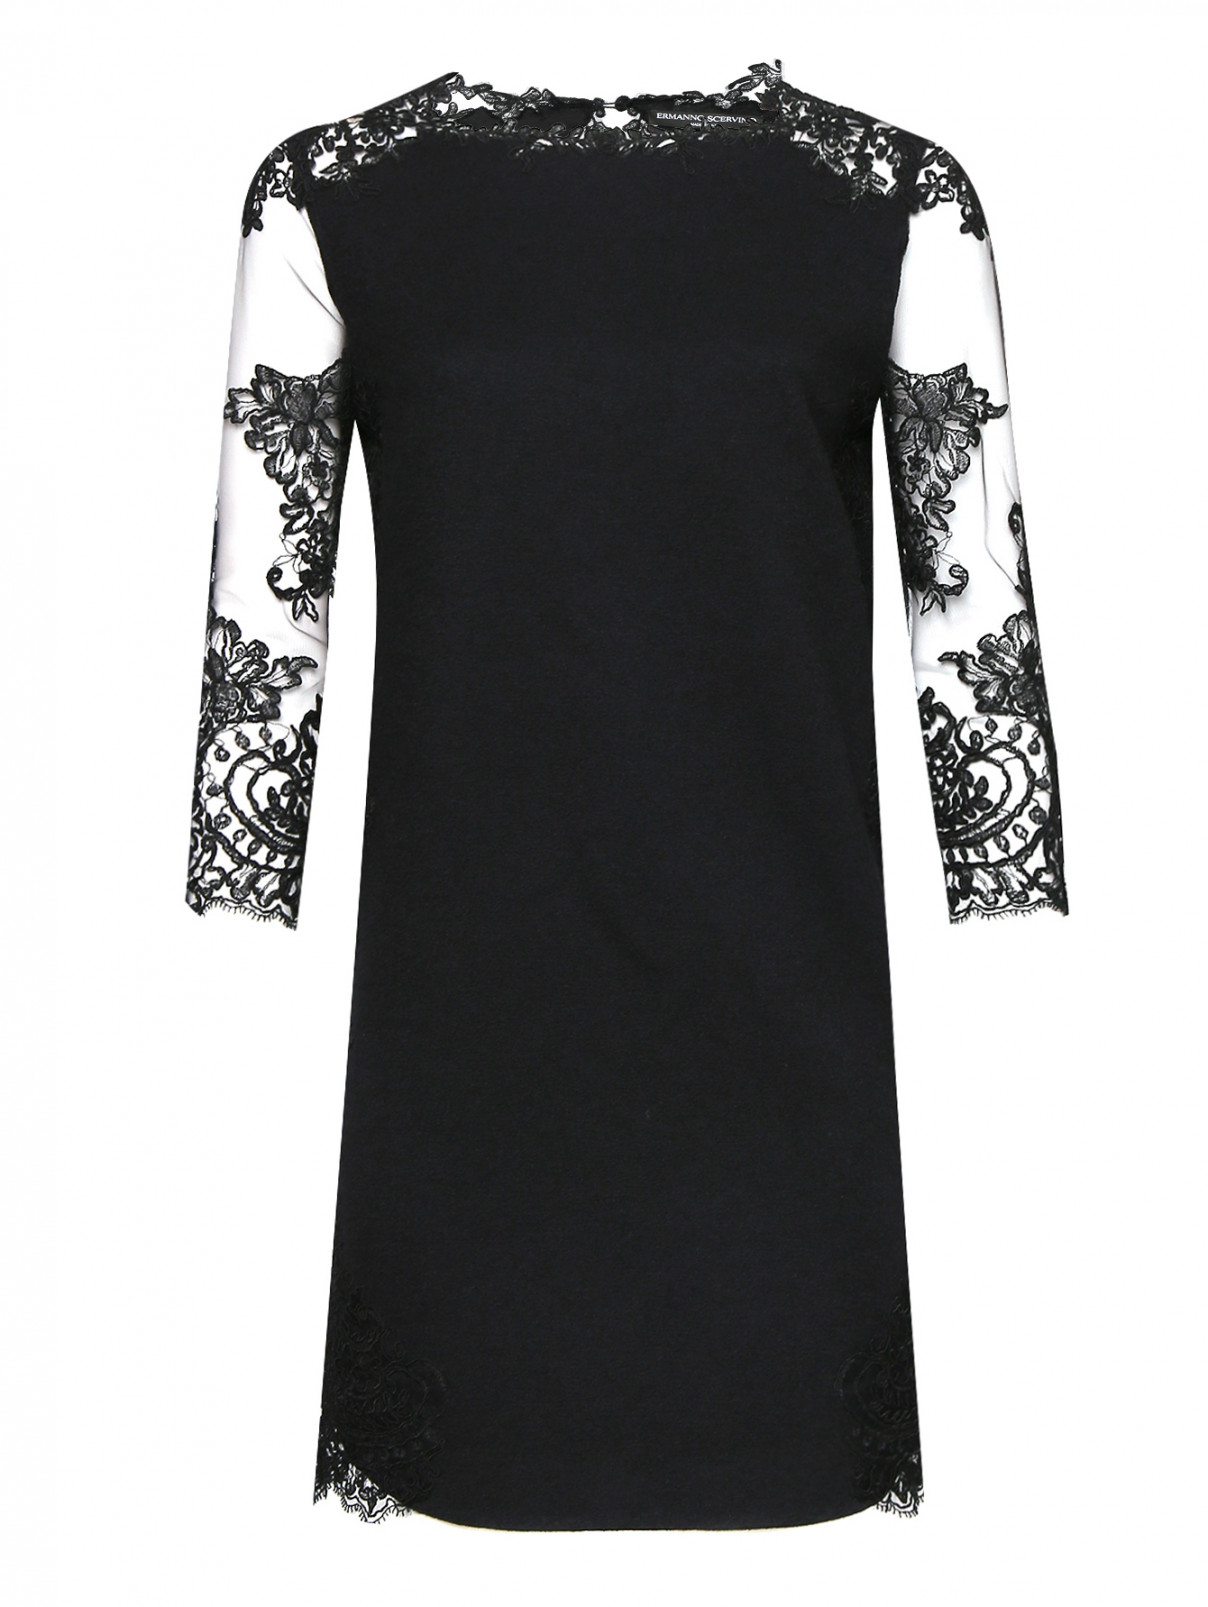 Платье из шерсти, шелка и кашемира с узором Ermanno Scervino  –  Общий вид  – Цвет:  Черный